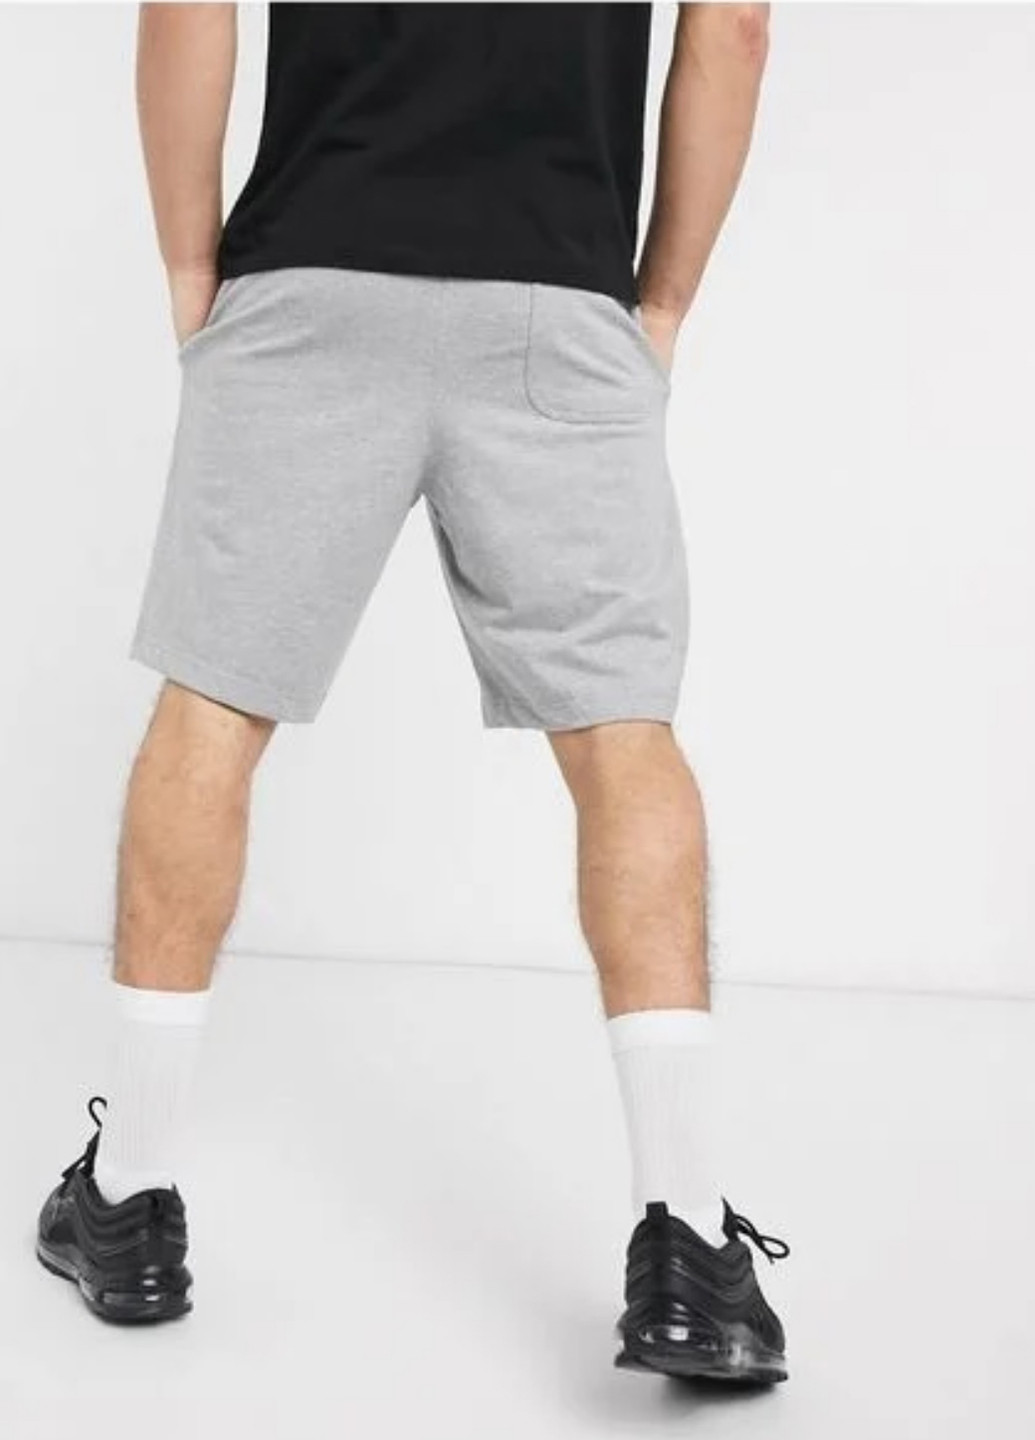 Шорты Nike бермуды меланжи светло-серые спортивные трикотаж, хлопок